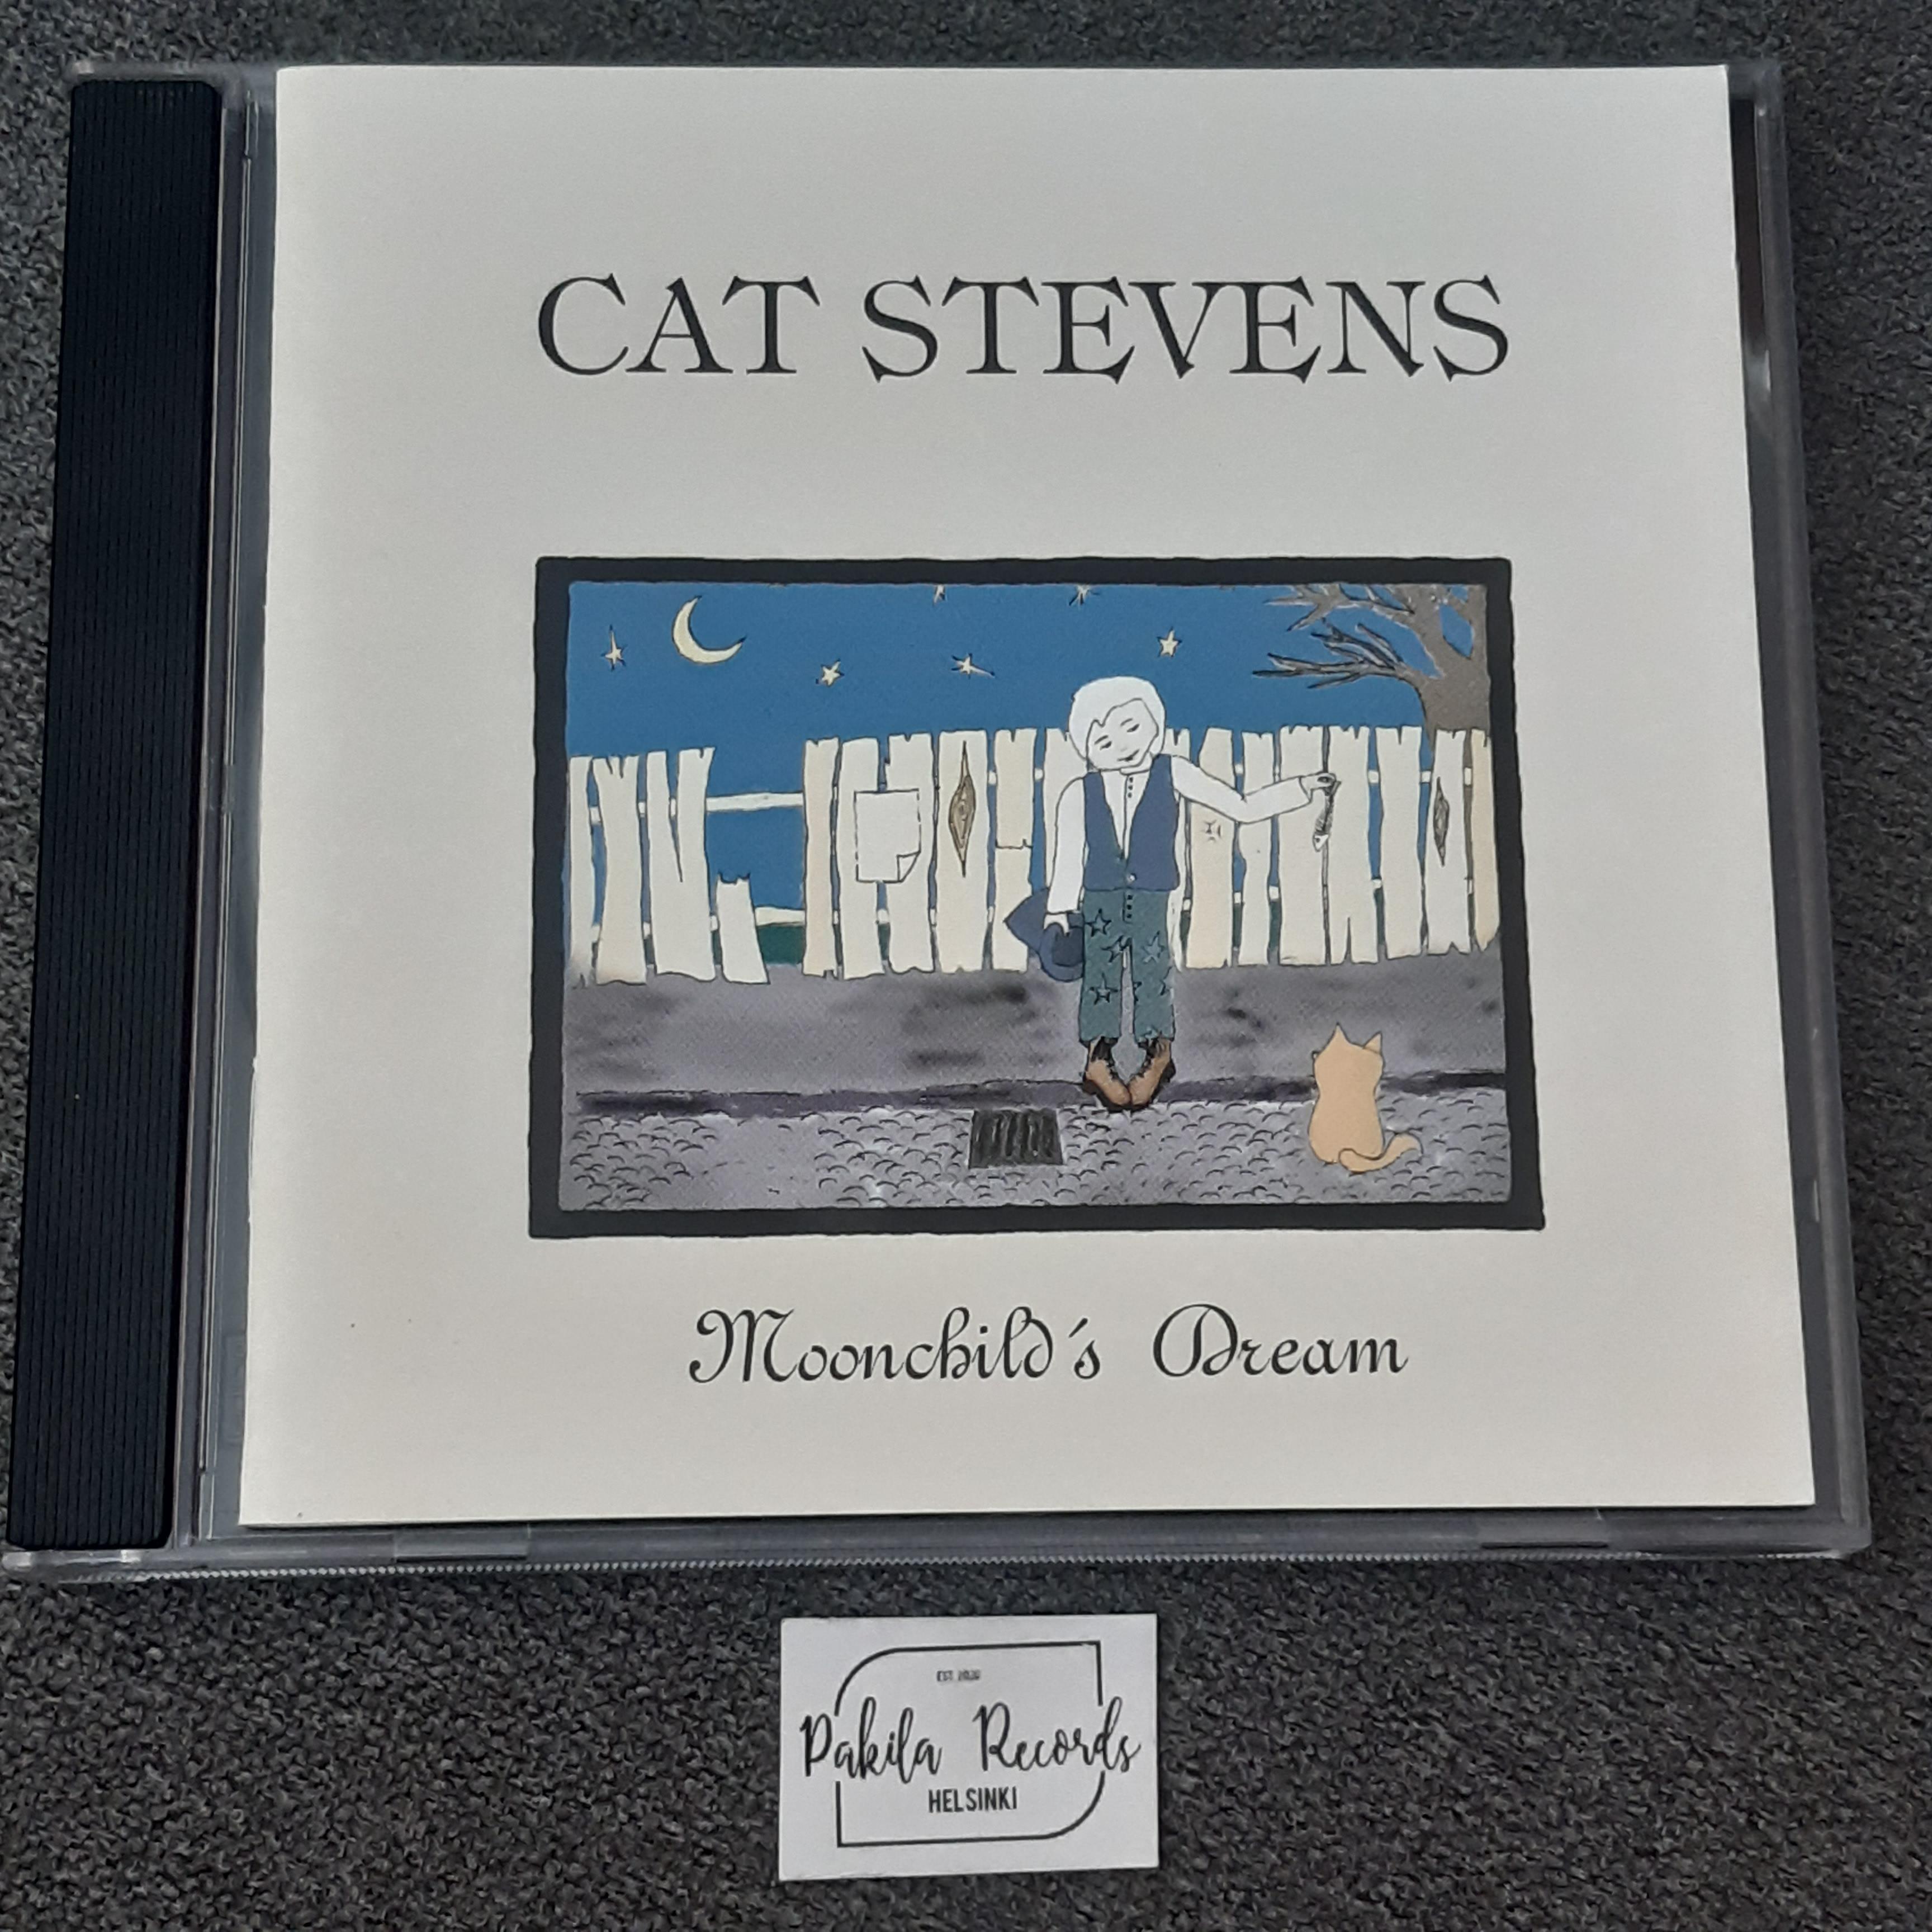 Cat Stevens - Moonchild's Dream - CD (käytetty)